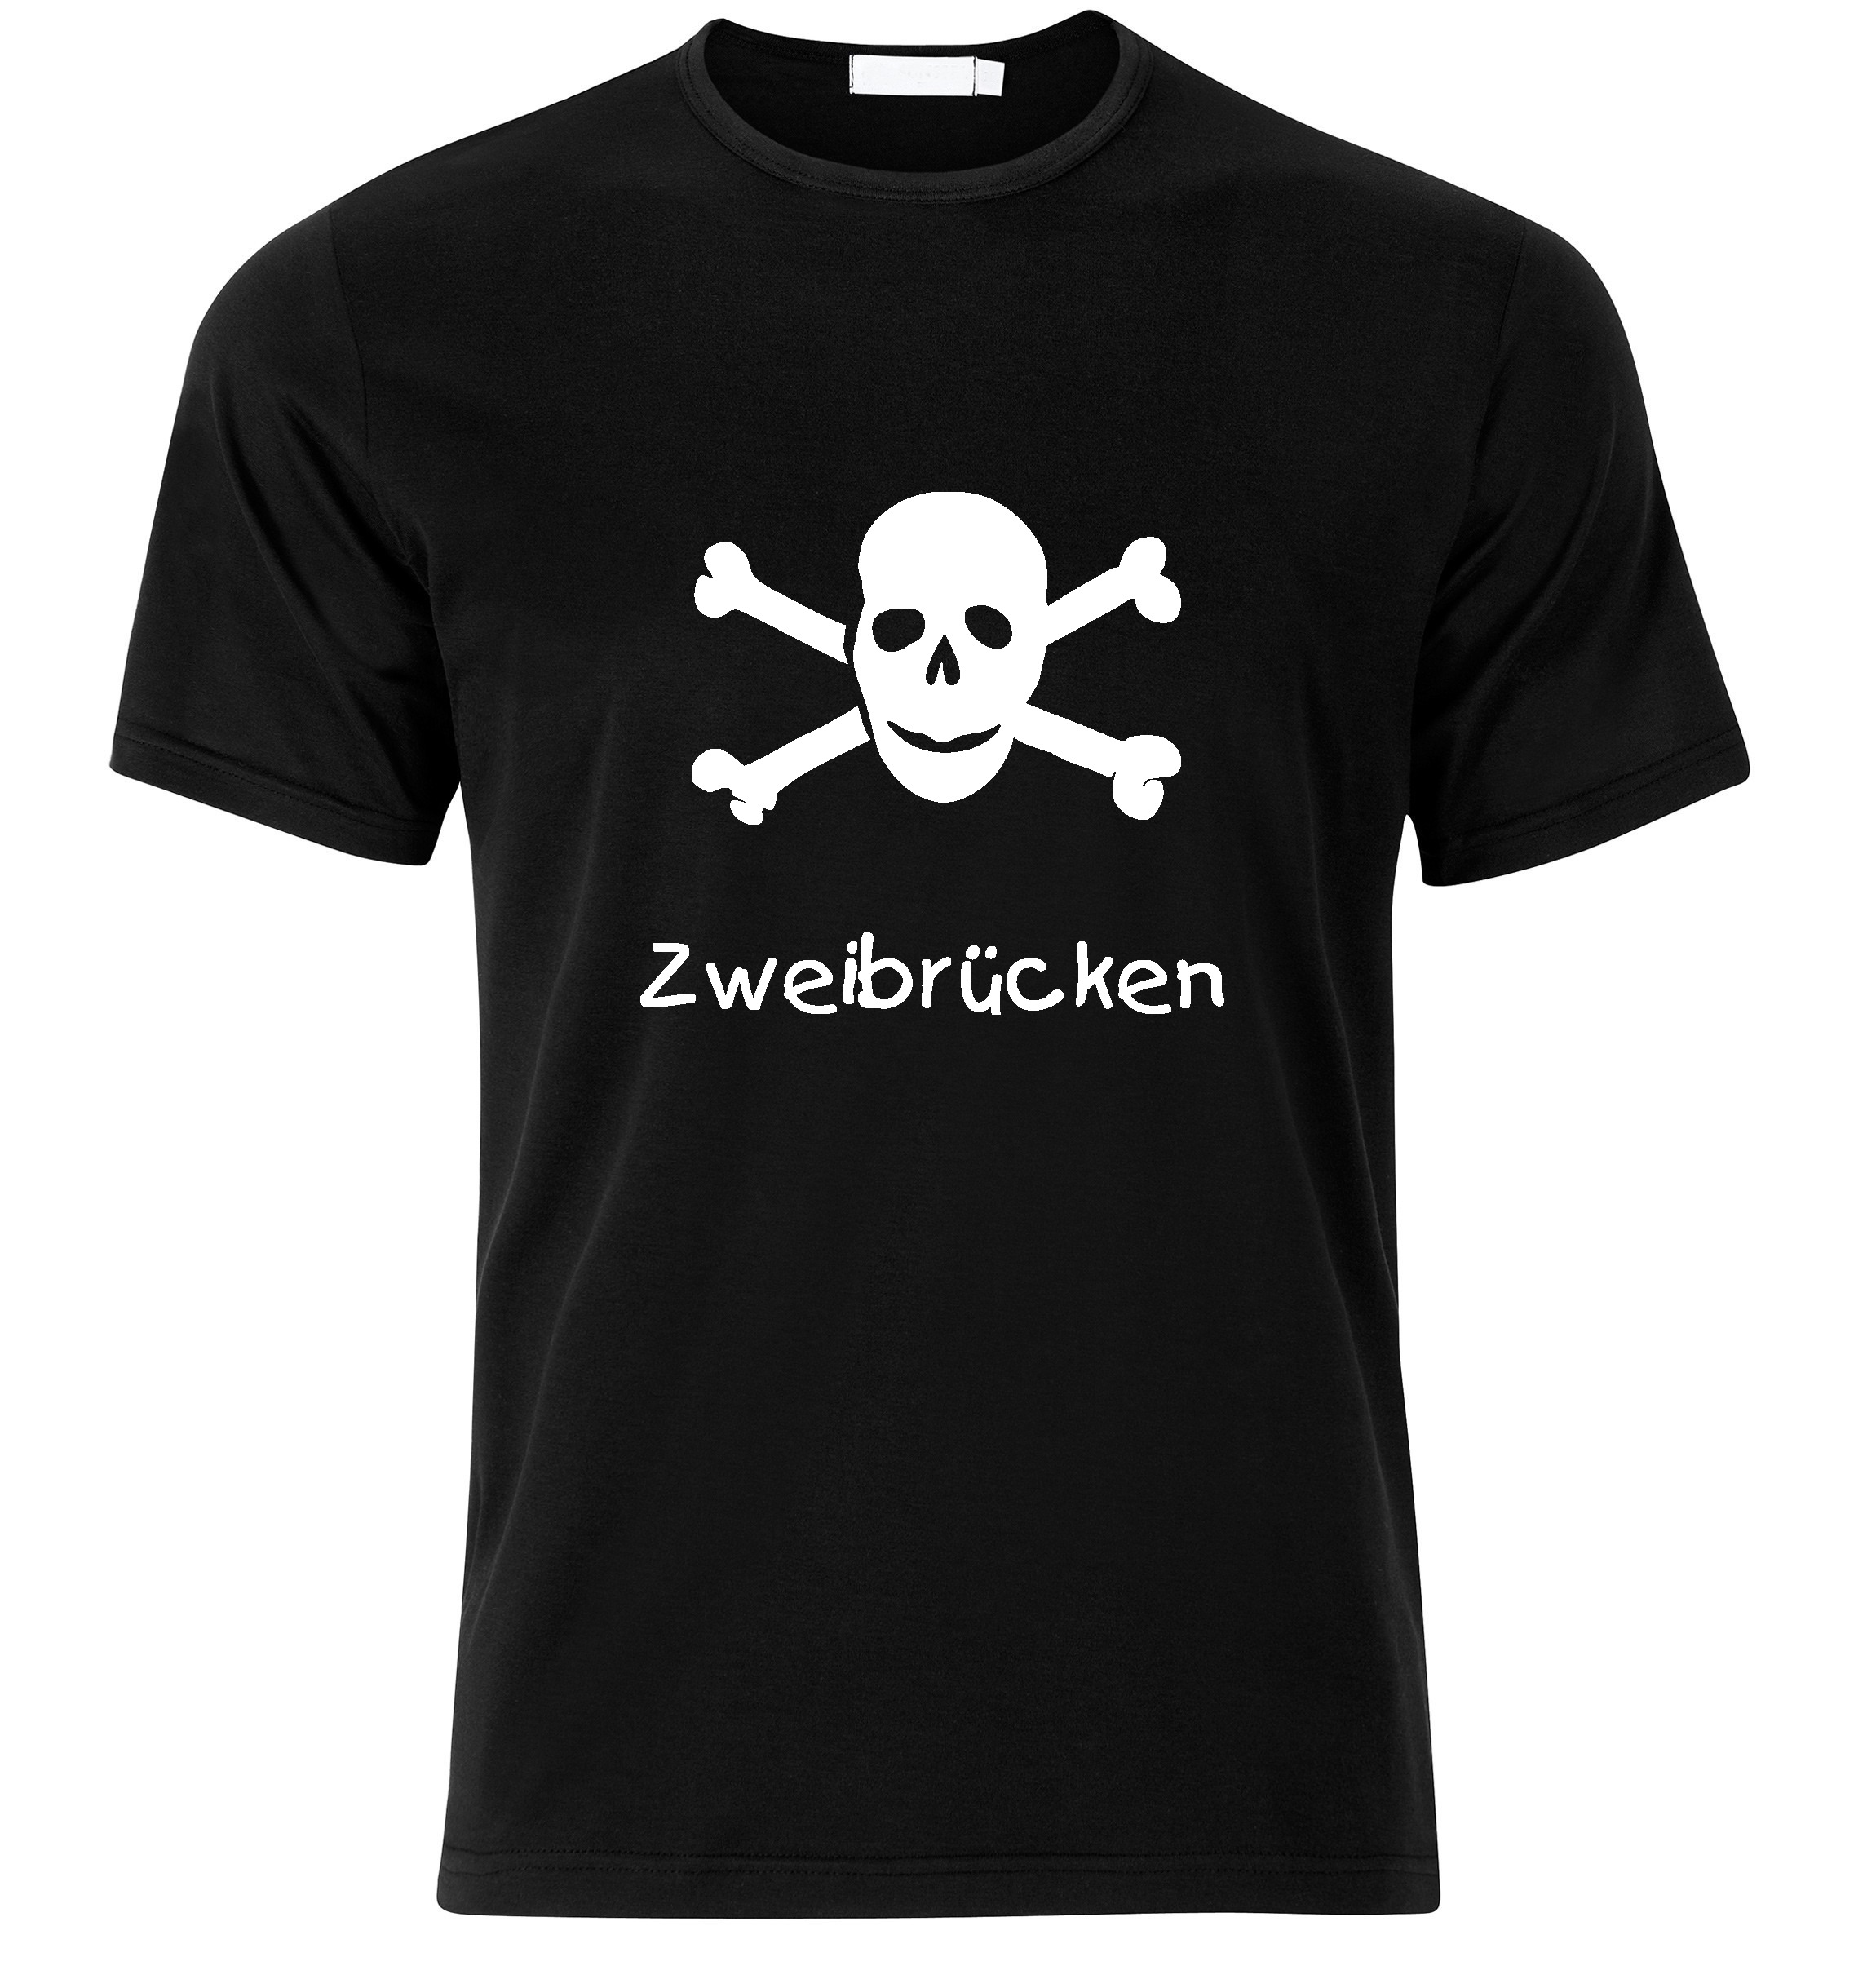 T-Shirt Zweibrücken Jolly Roger, Totenkopf